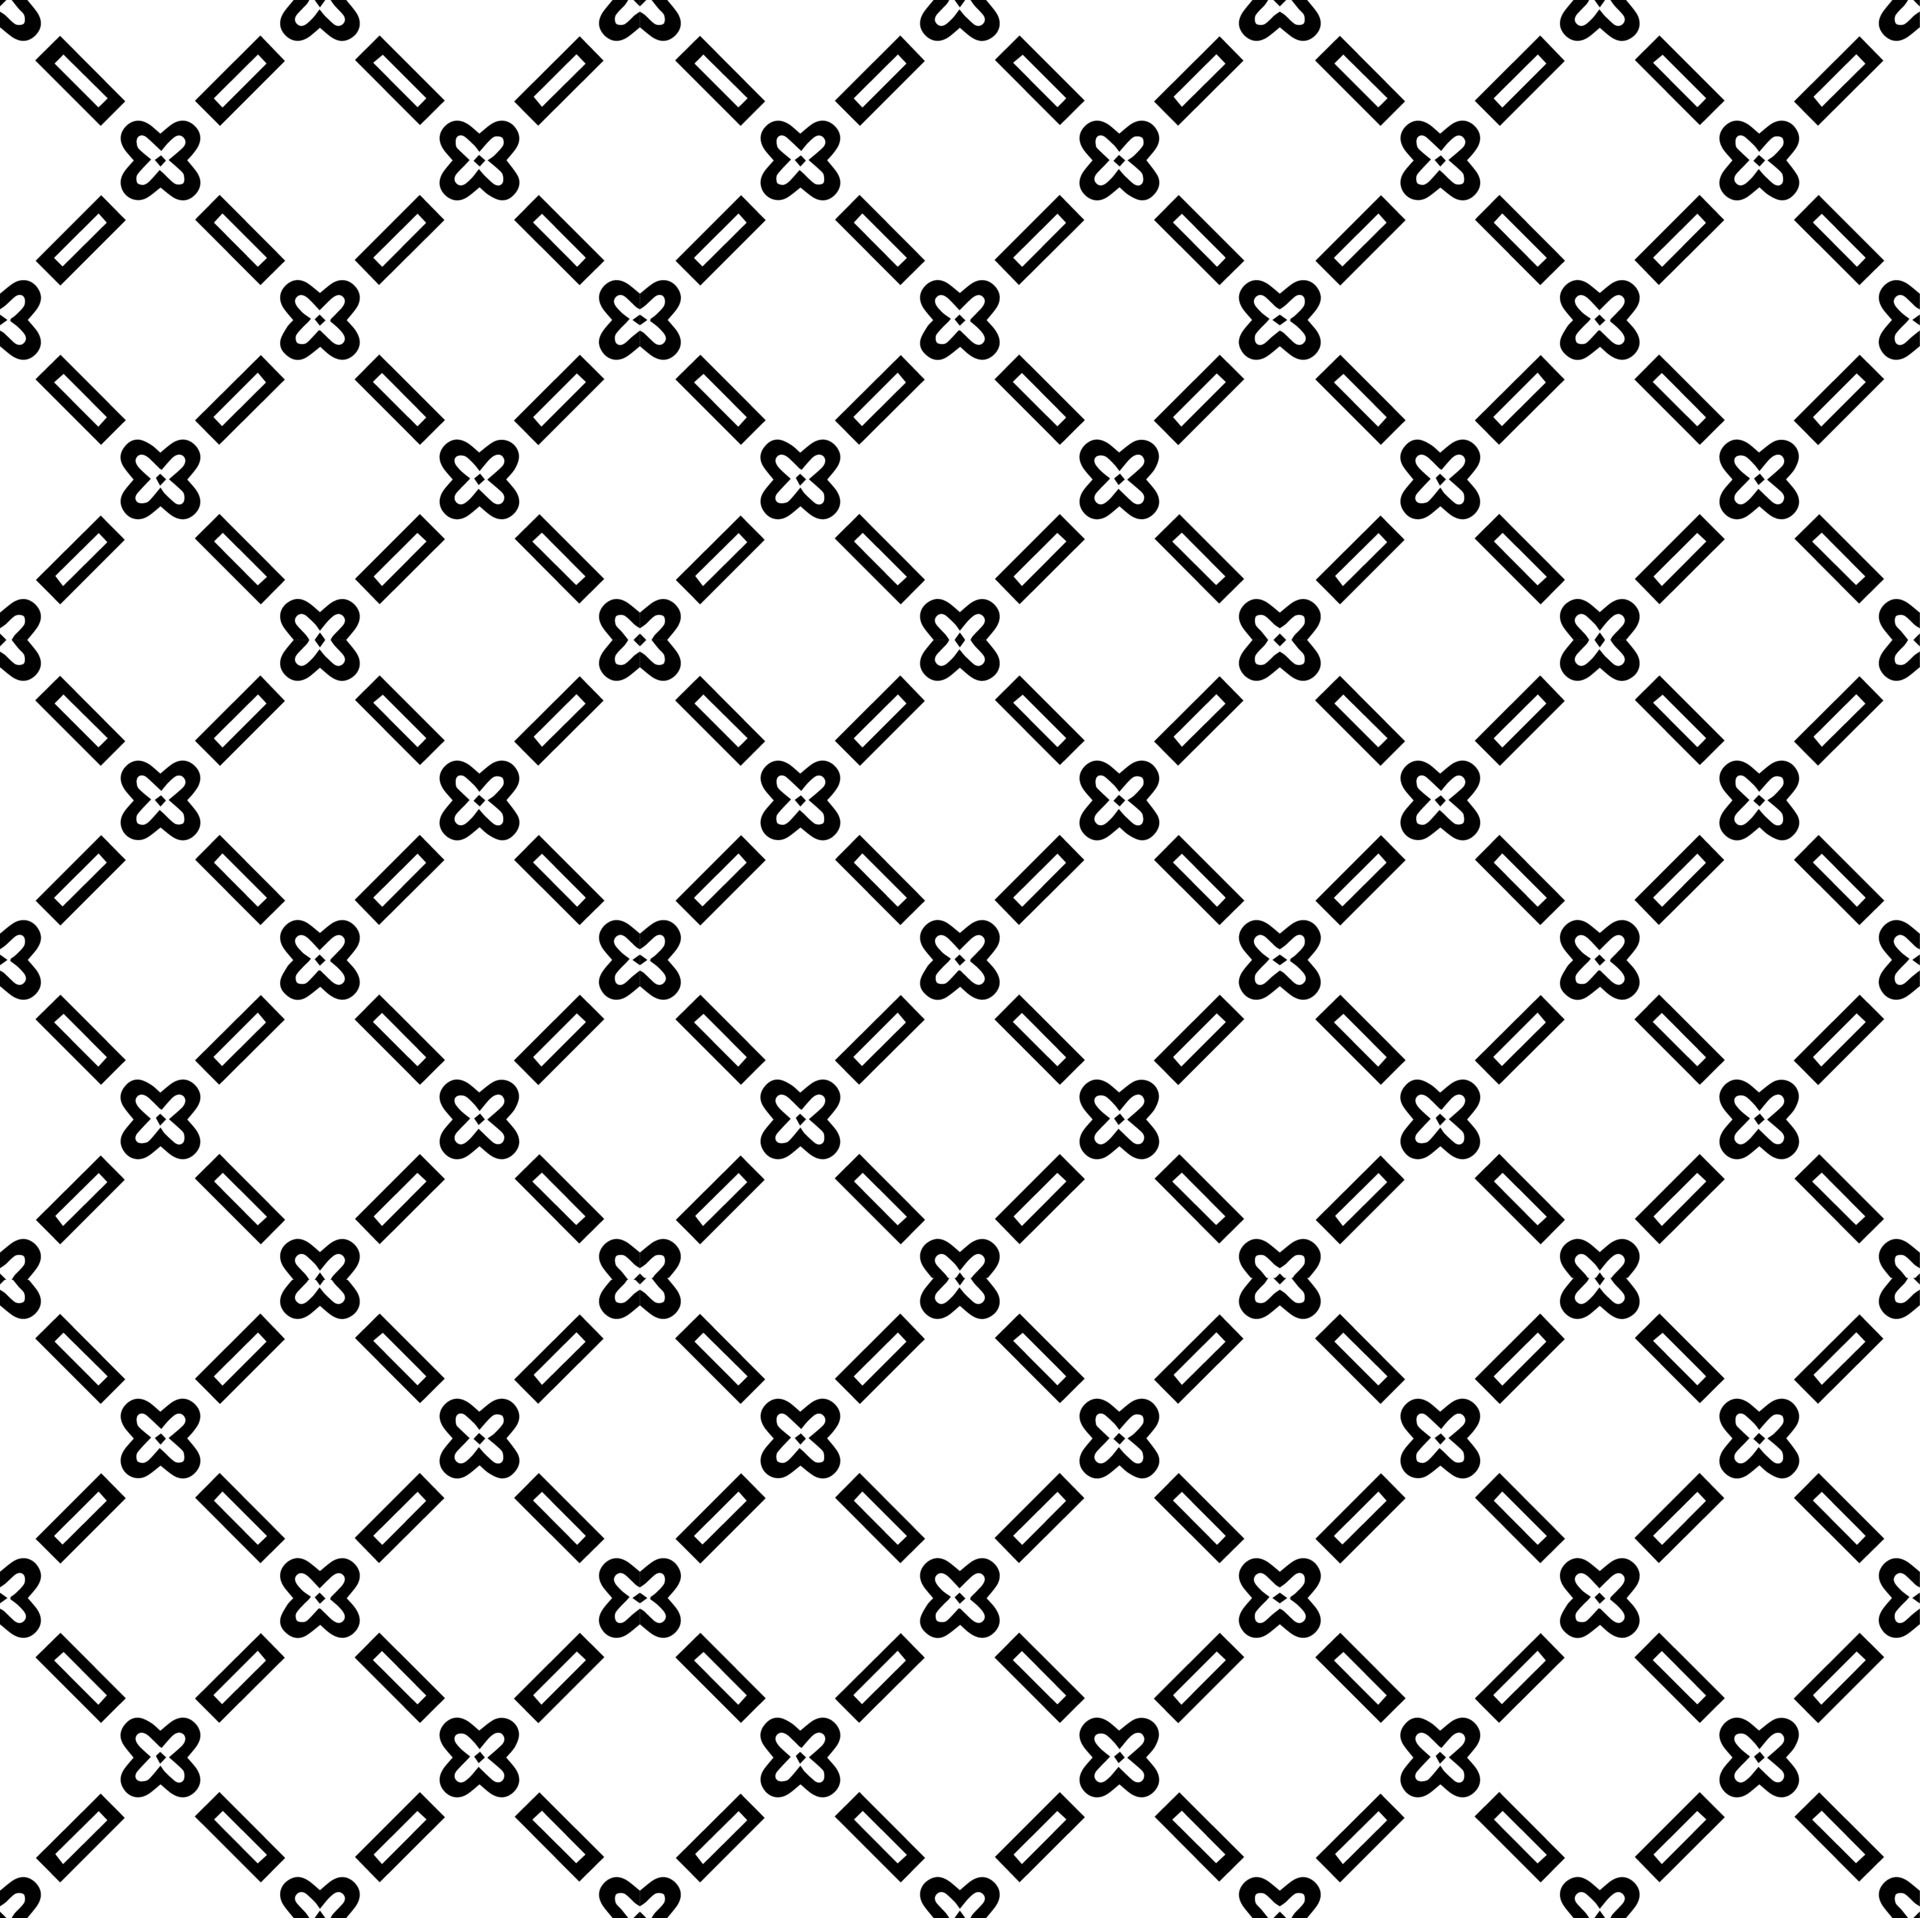 Textura de patrón de superficie en blanco y negro diseño gráfico ornamental  bw adornos de mosaico plantilla de patrón